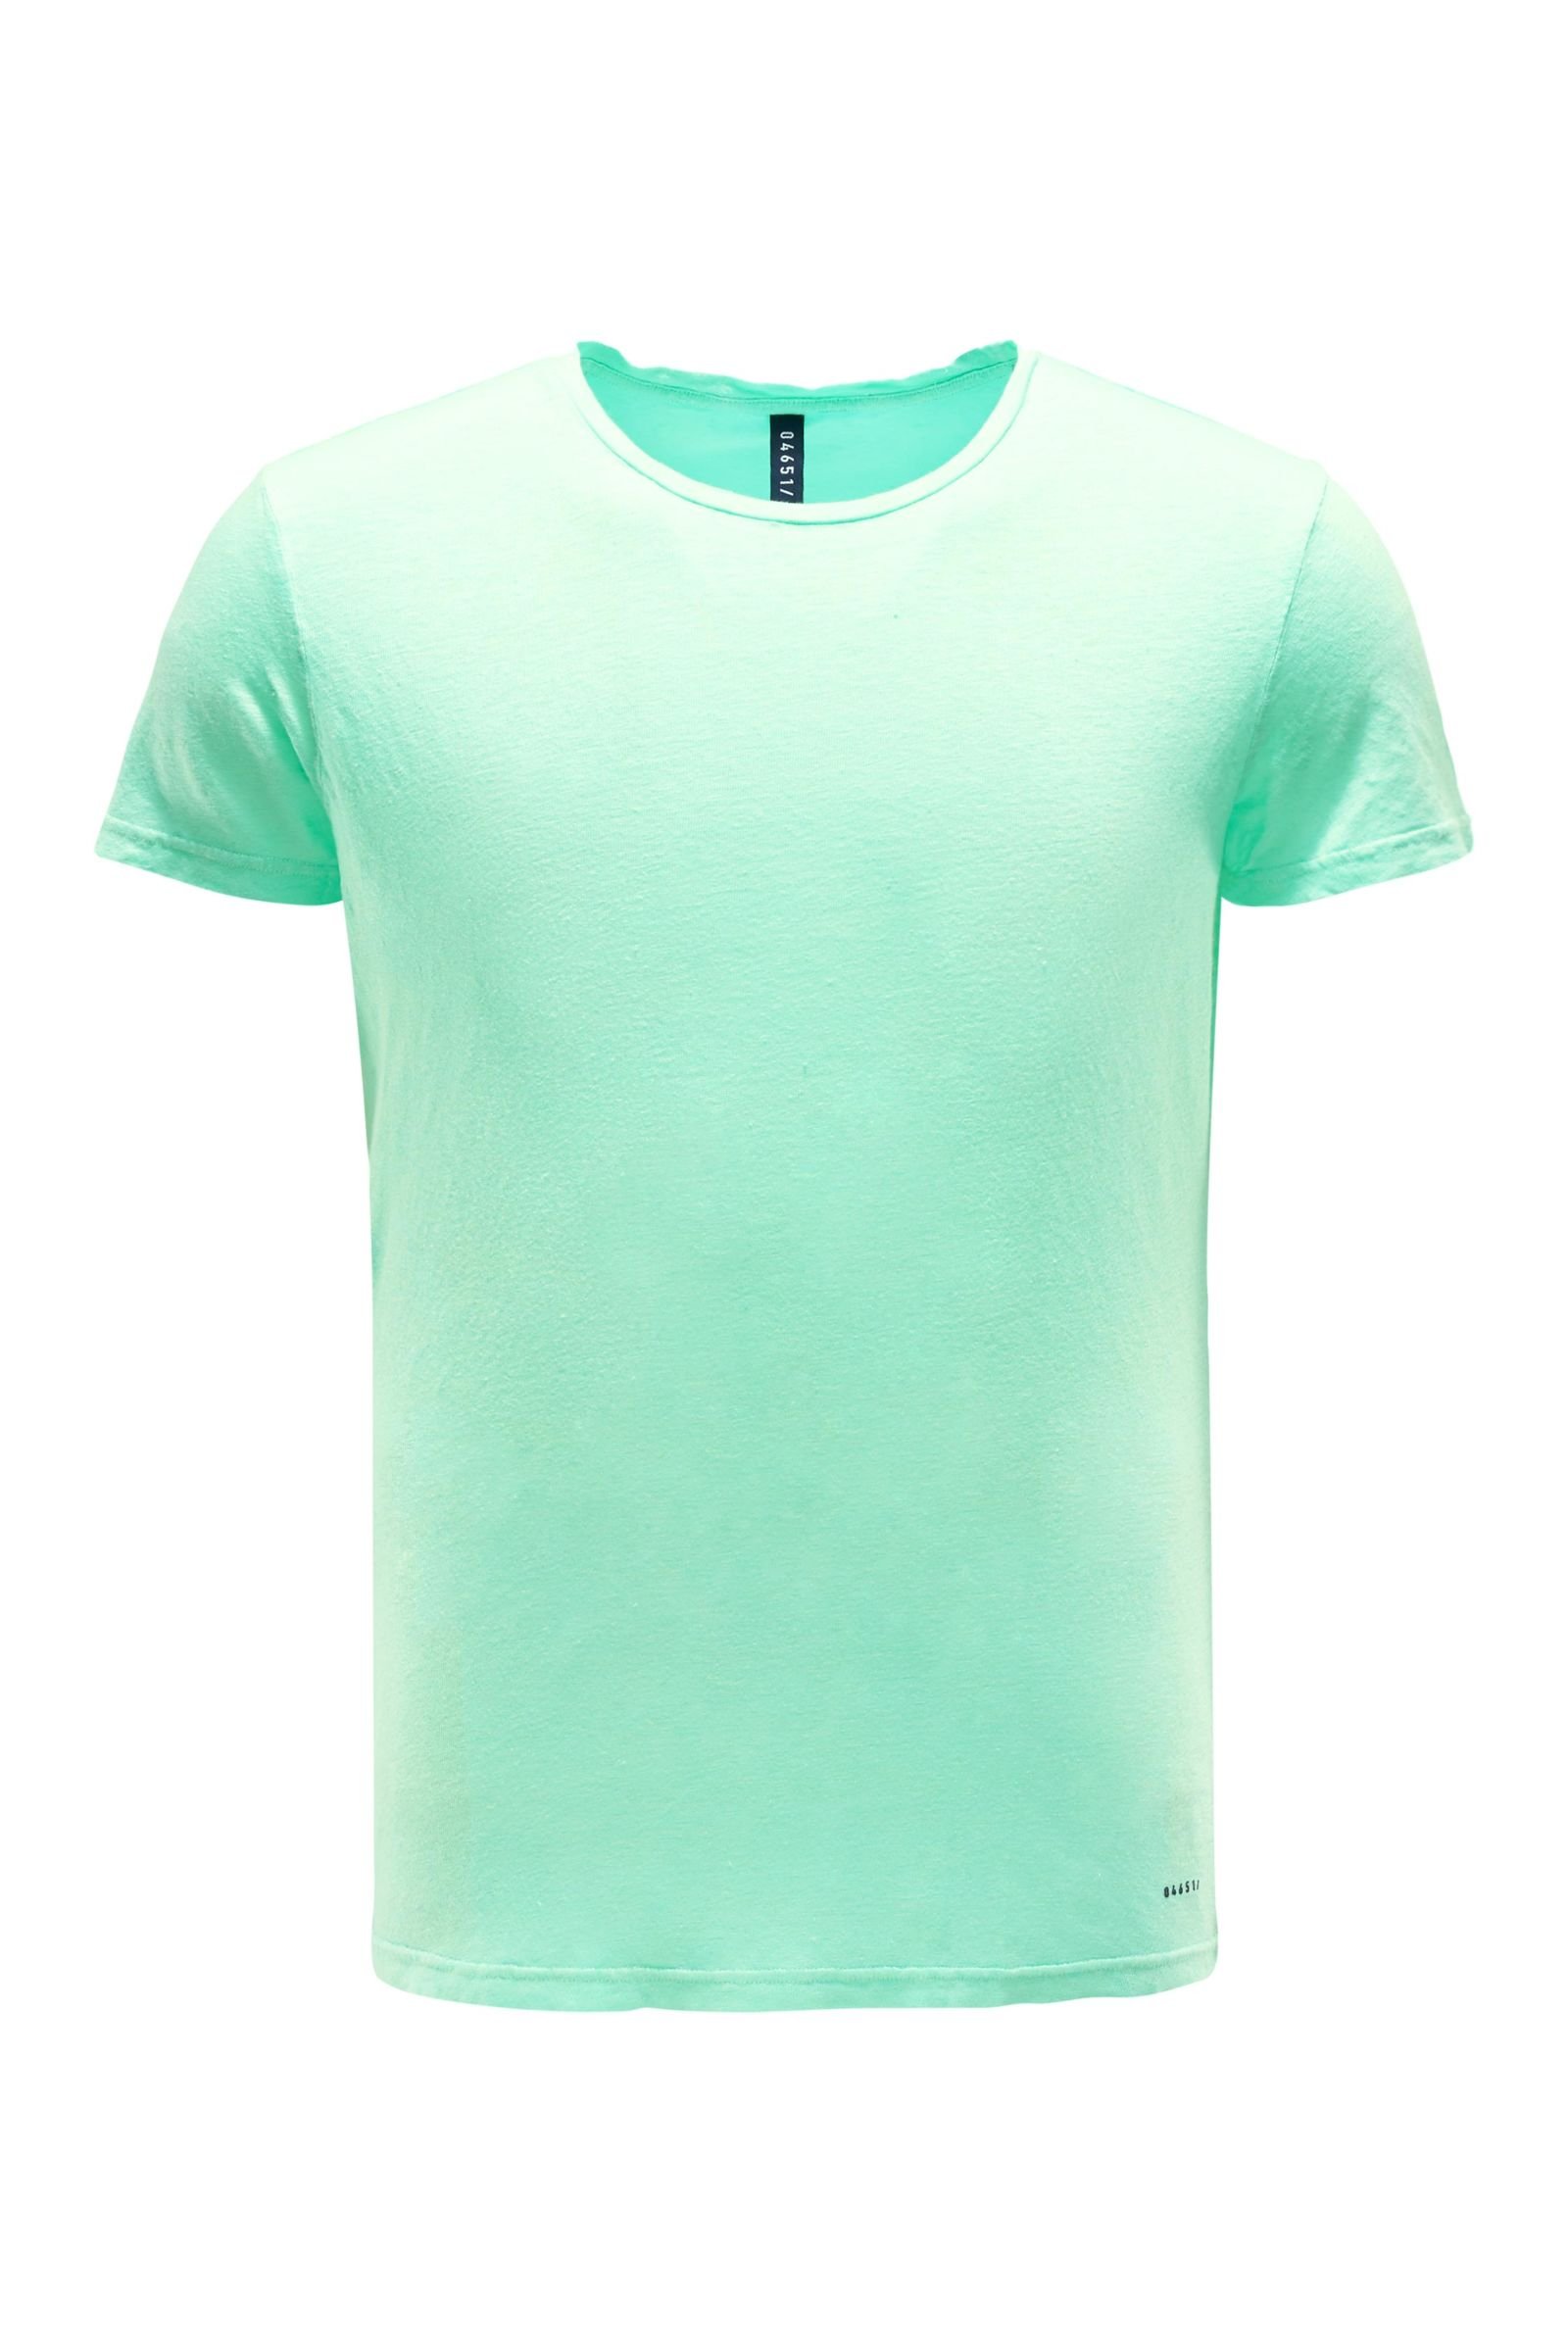 Linen crew neck T-shirt mint